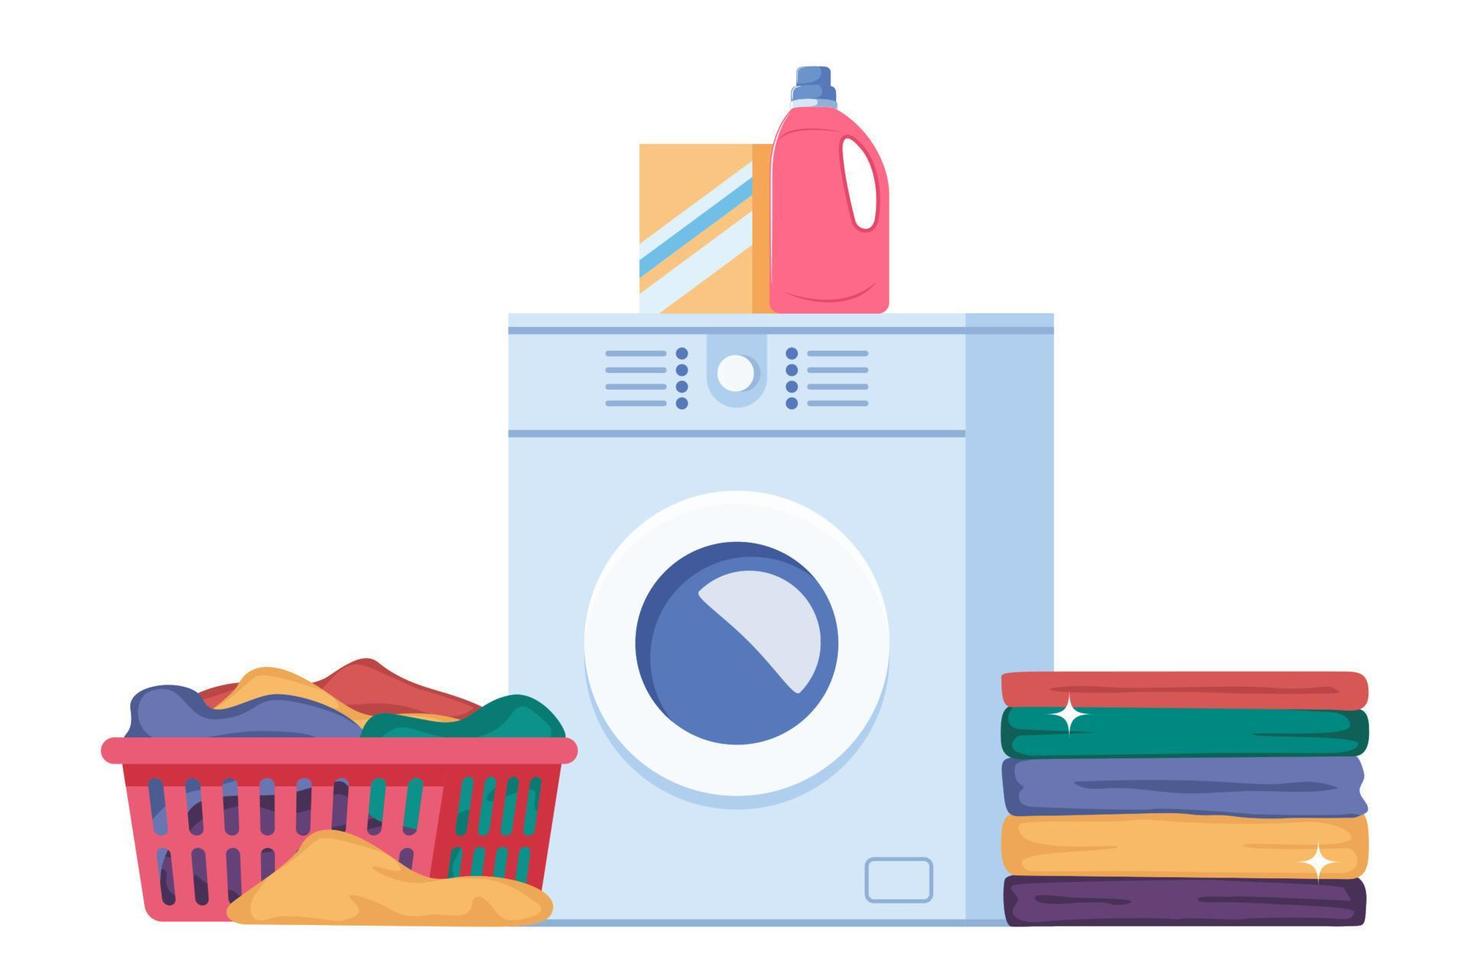 tvätt infographics med sekvens av fyra annorlunda stadier av tvättning bearbeta. tvättning kläder. smutsig Linné, tvättning maskin, lugg av rena kläder. hushållning begrepp vektor illustration.